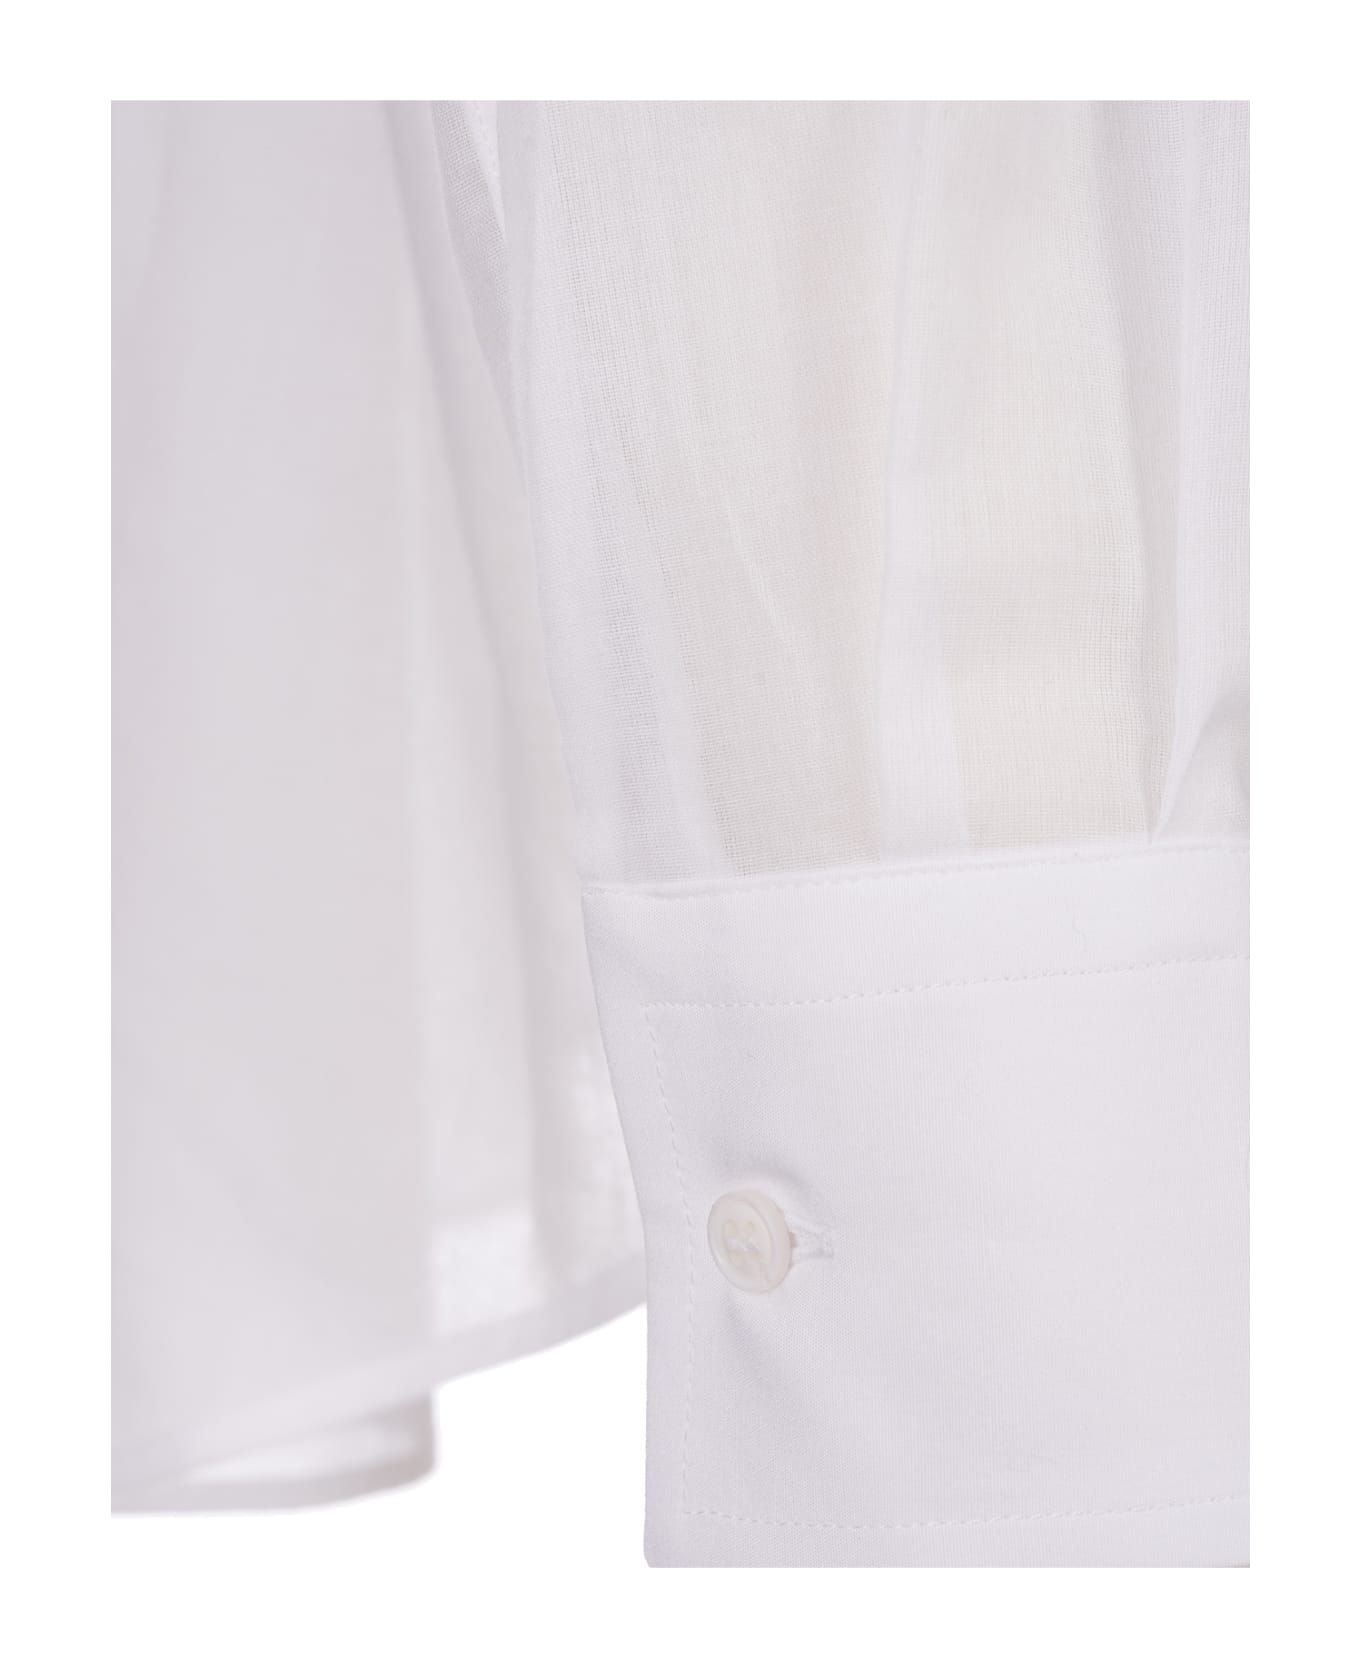 Ermanno Scervino White Oversize Shirt - Bianco